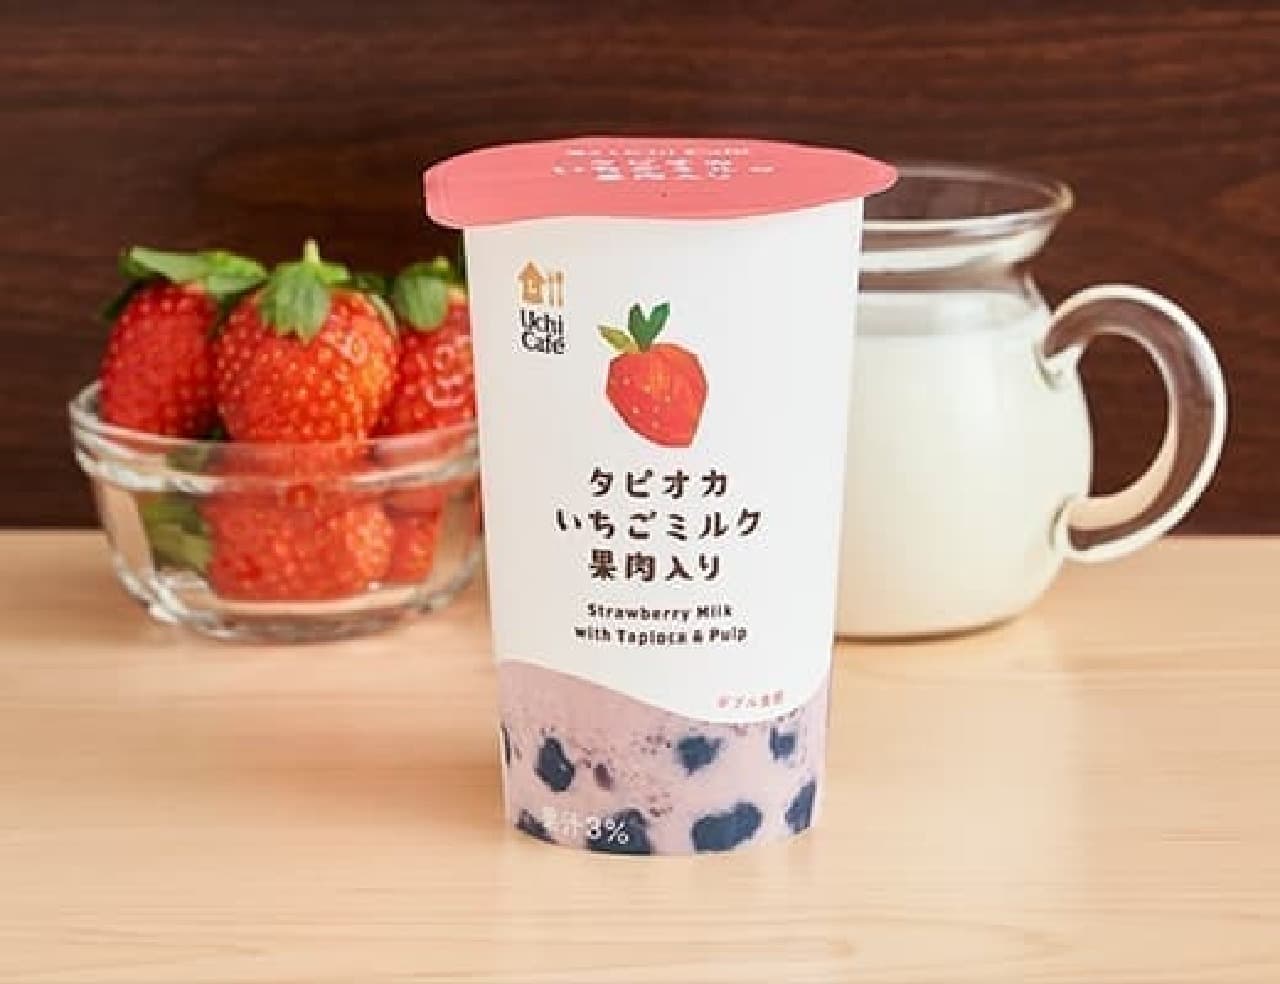 Uchi Cafe Tapioca Strawberry Milk with pulp